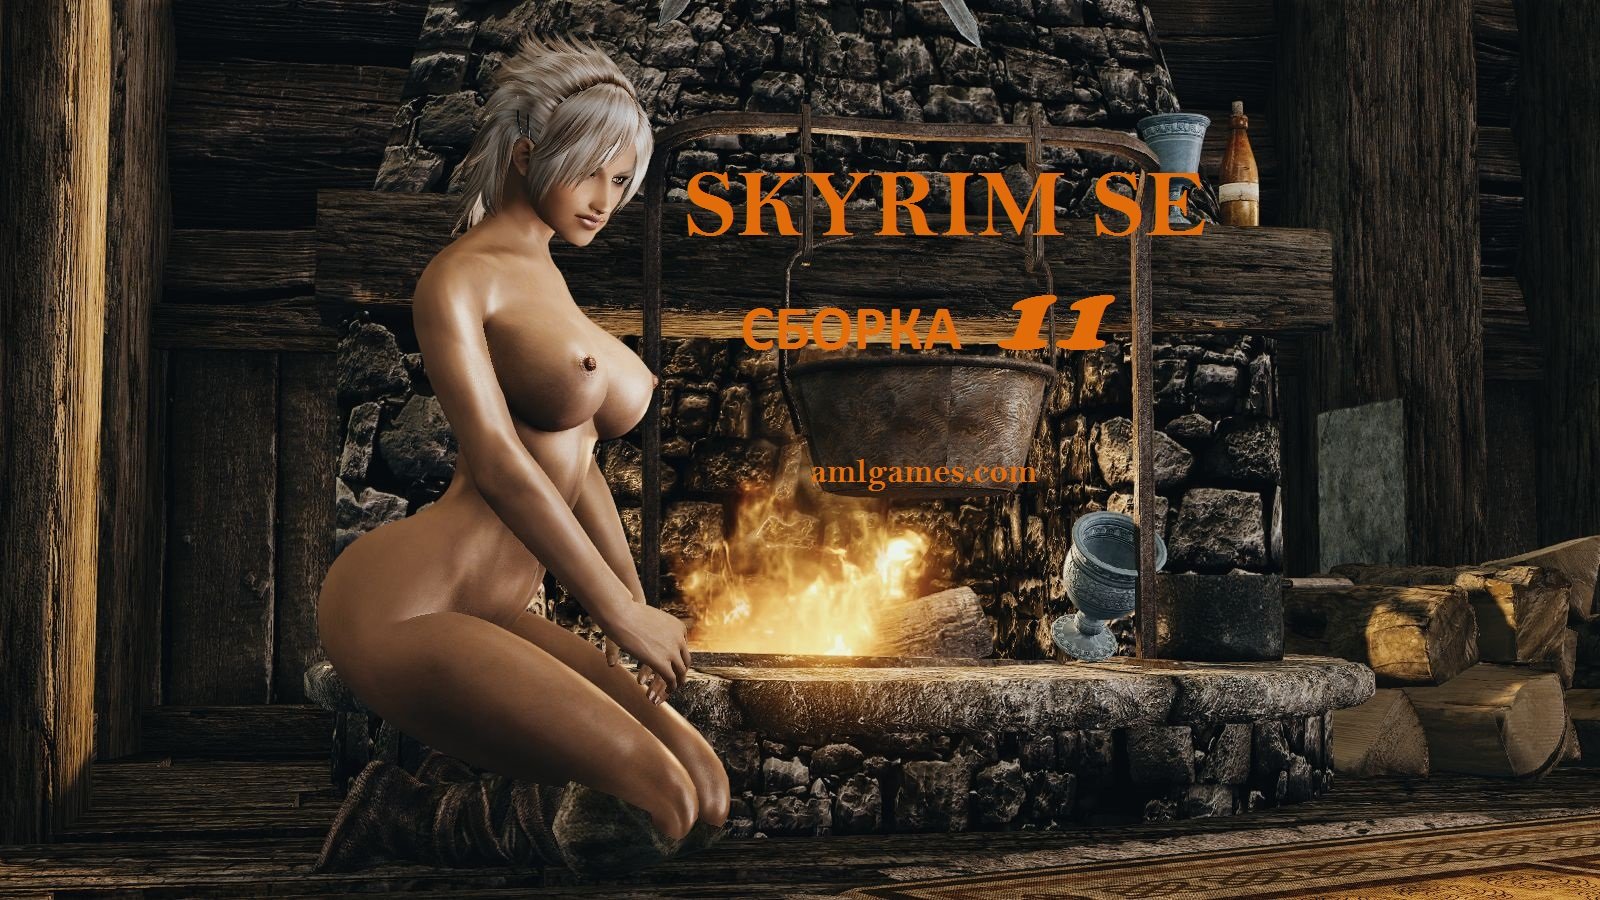 Skyrim SE (сборка 11)